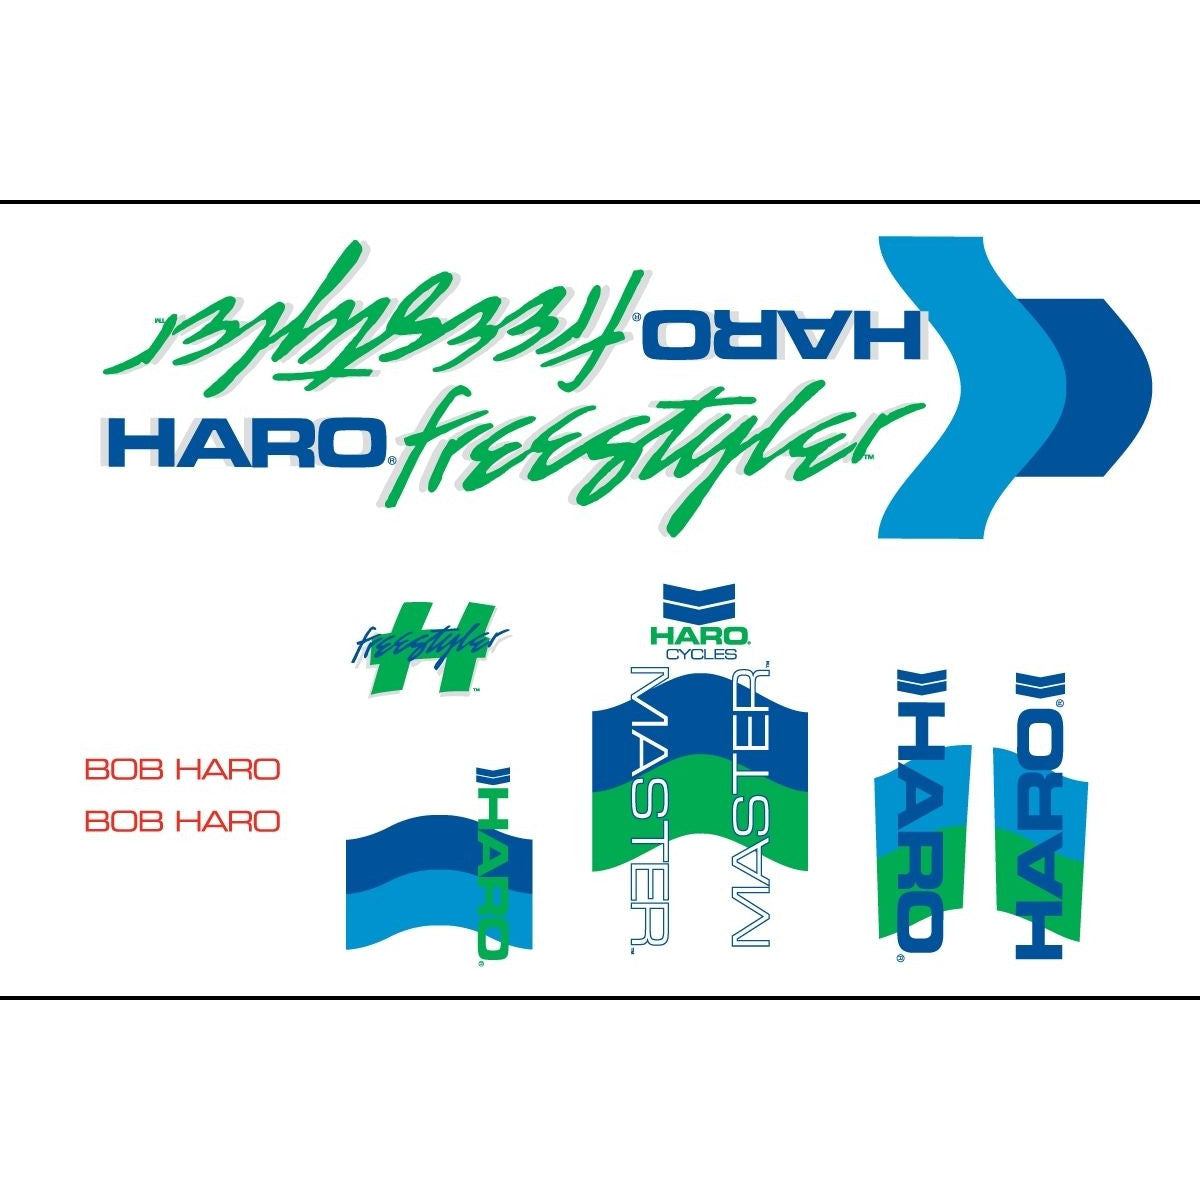 Haro 1985 Master BMX Decal Set for Frame + Fork - White/Green